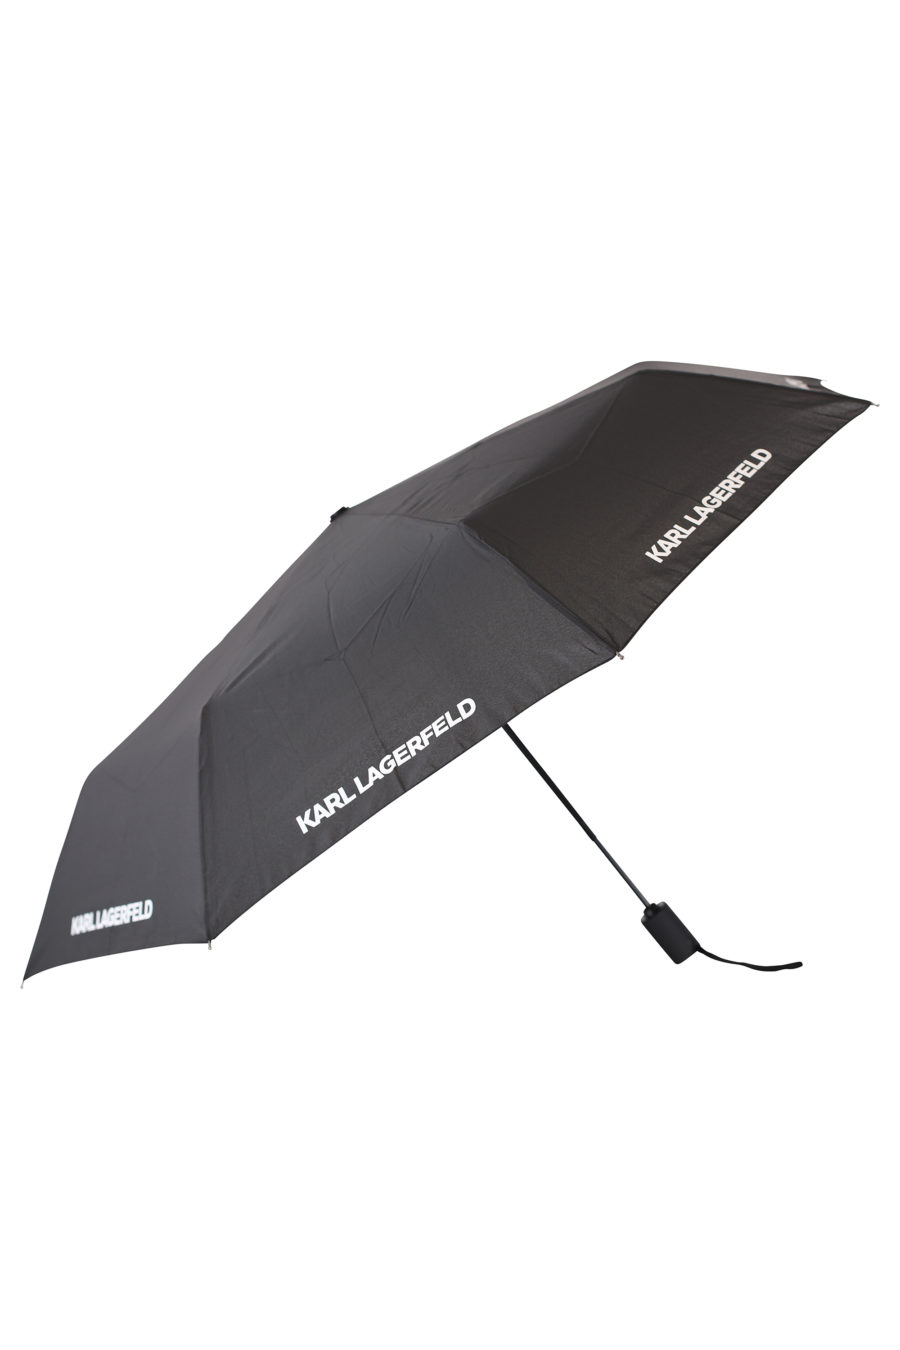 Guarda-chuva preto com logótipo da marca - IMG 2156